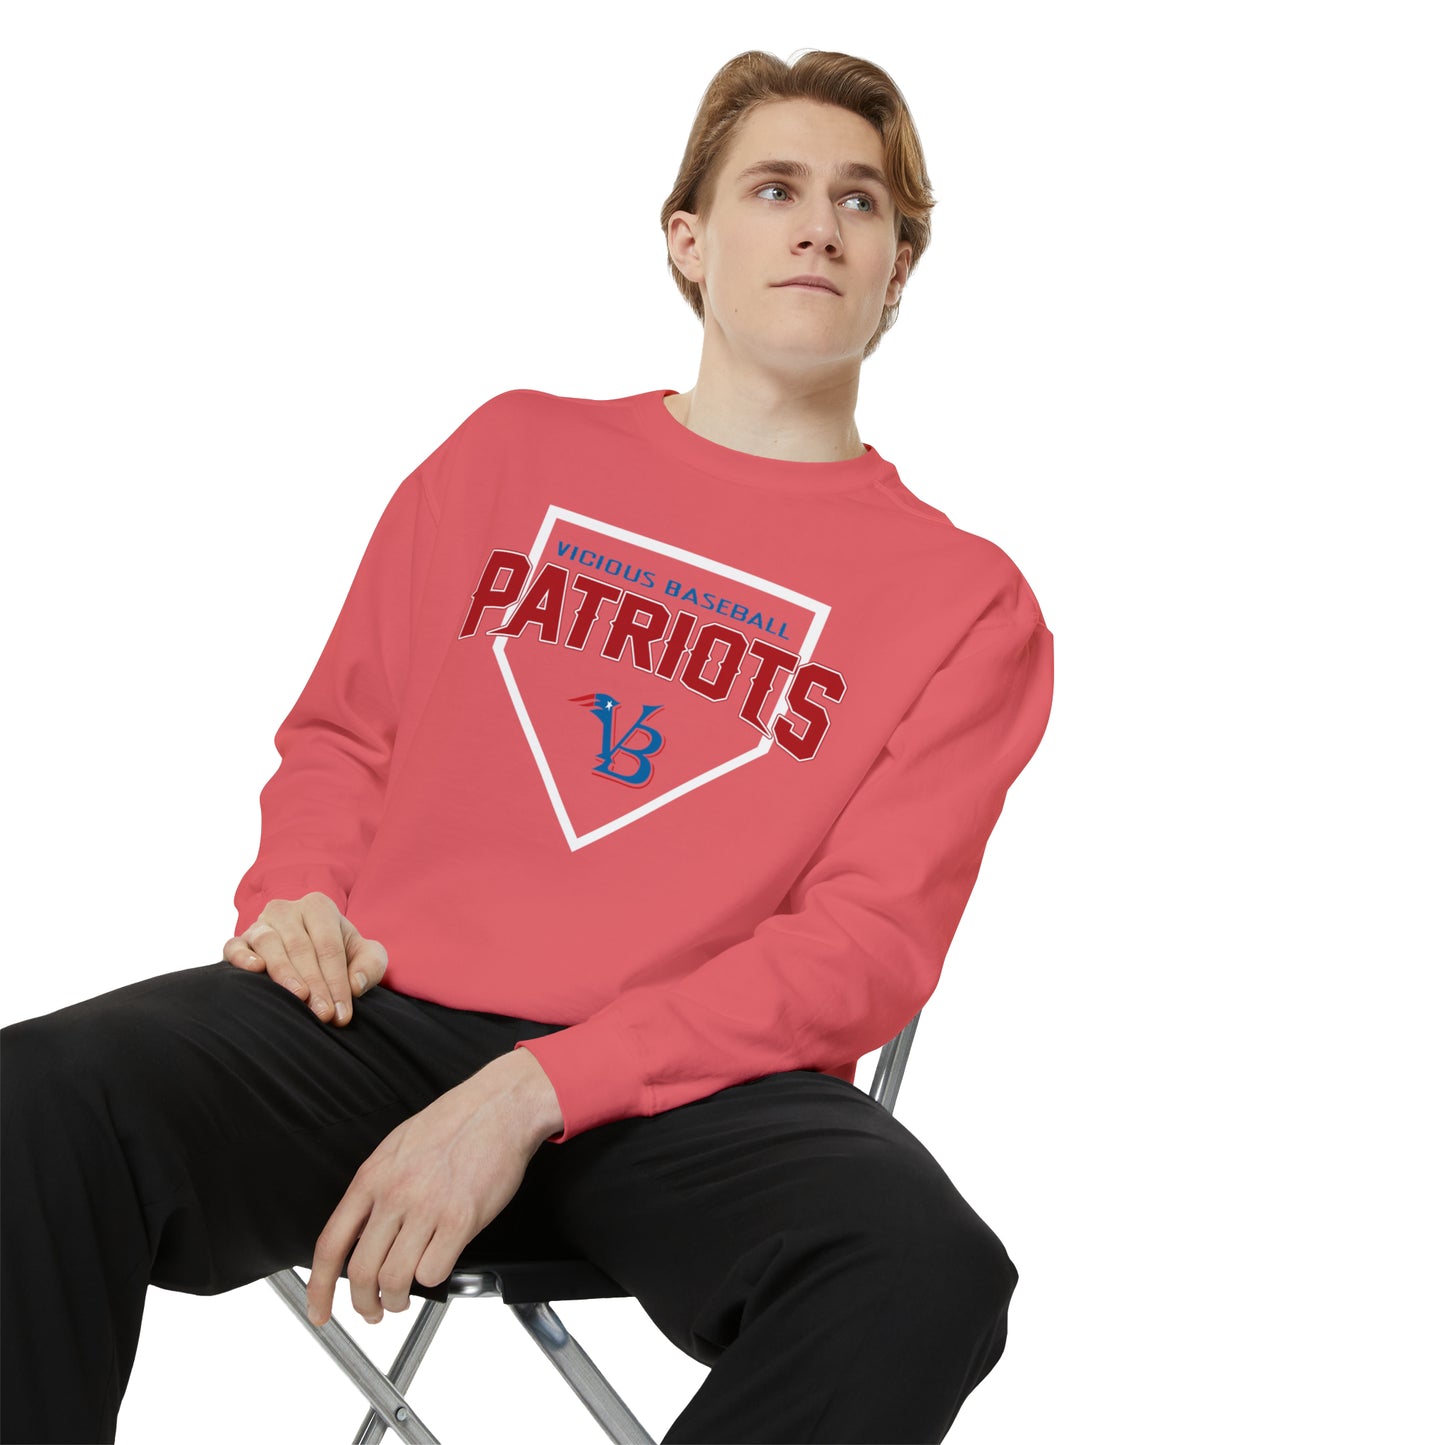 VB Patriots Garment-Dyed Sweatshirt